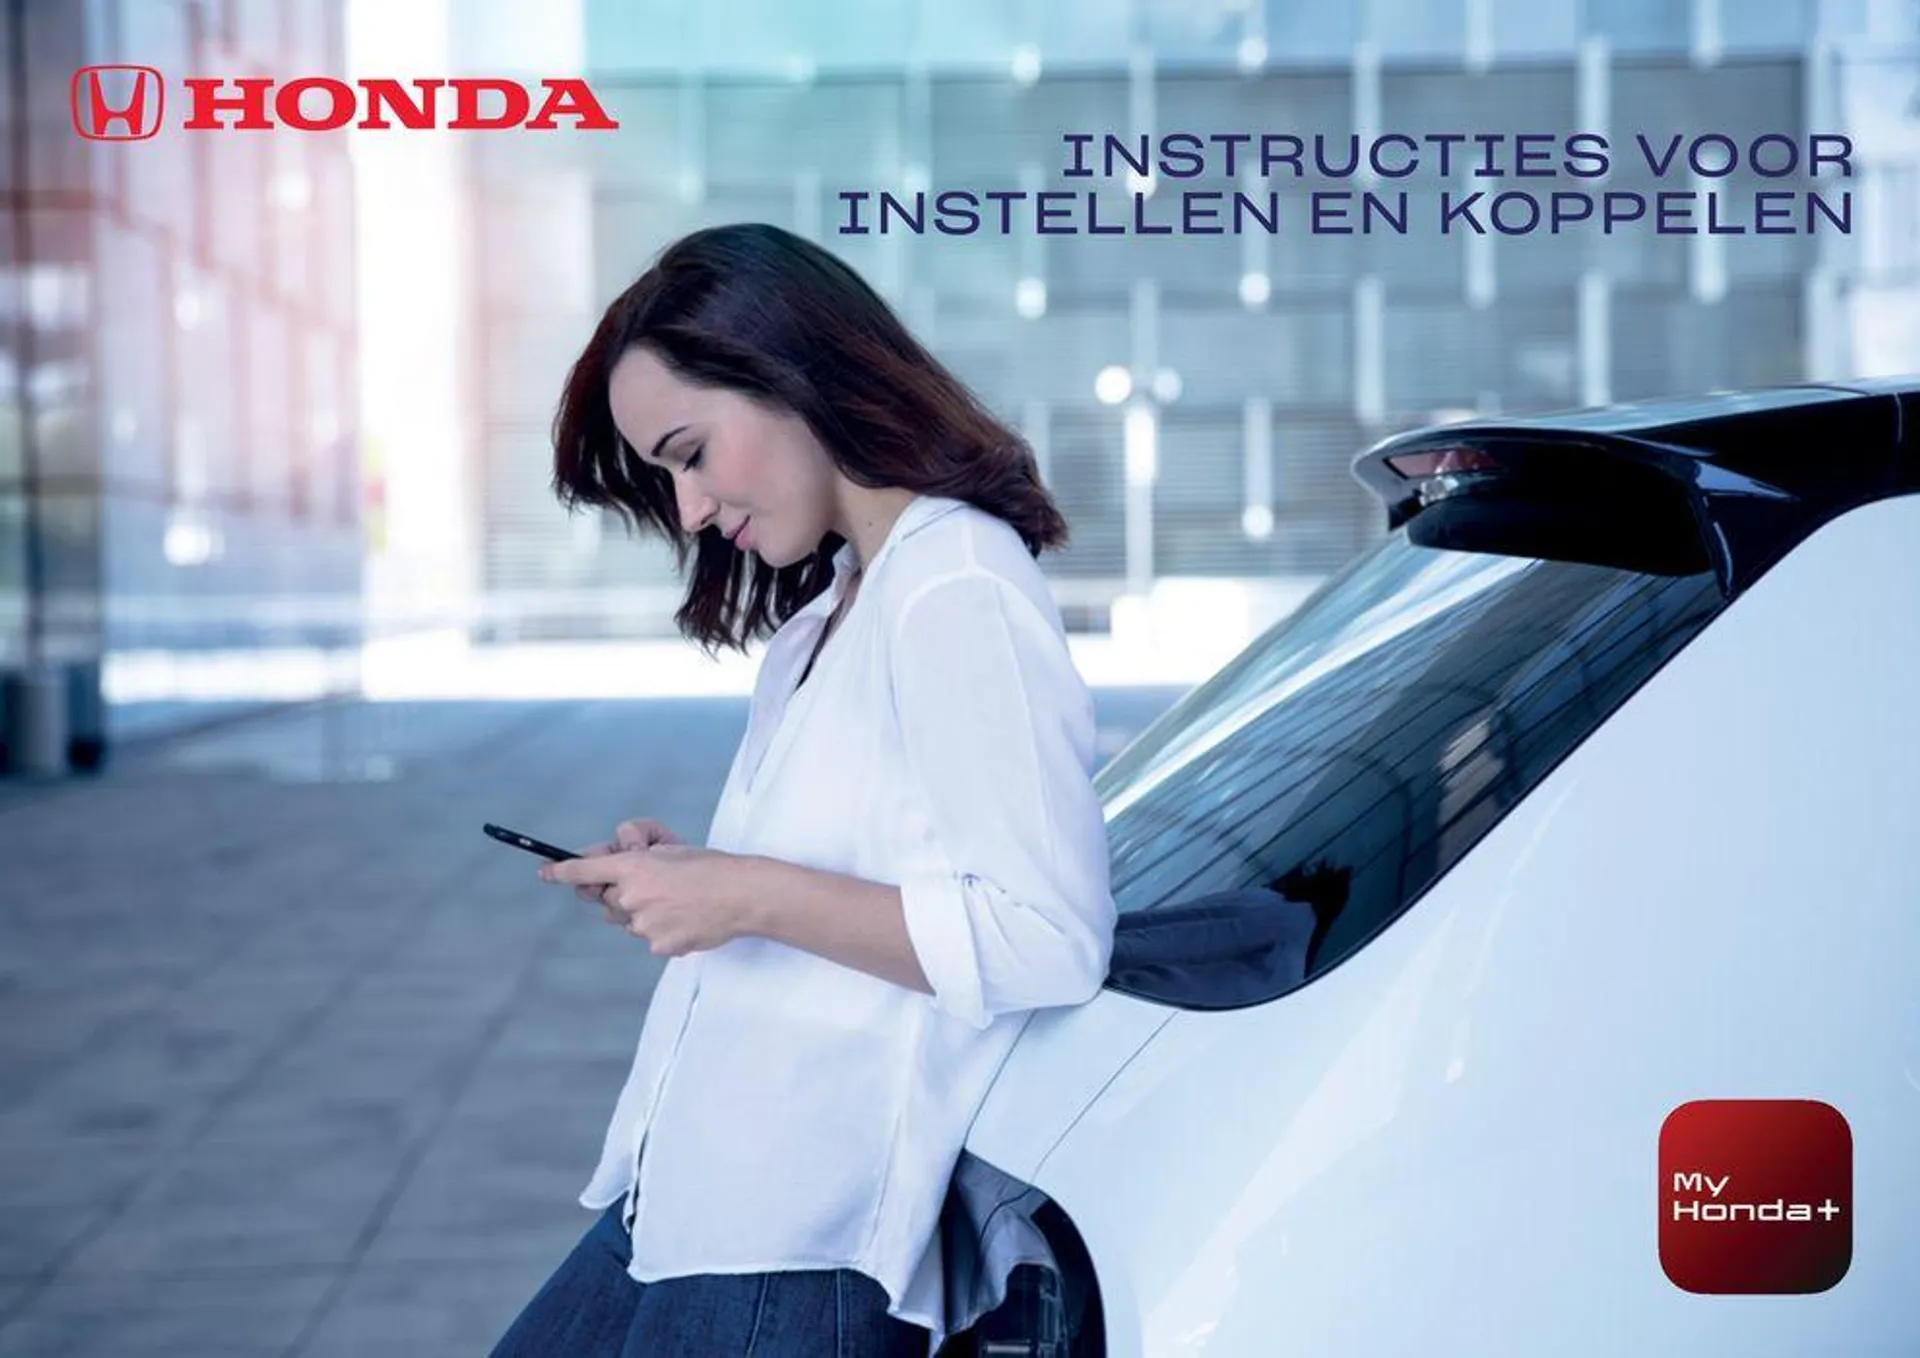 My Honda+ app Instructies voor instellen en koppelen - 1